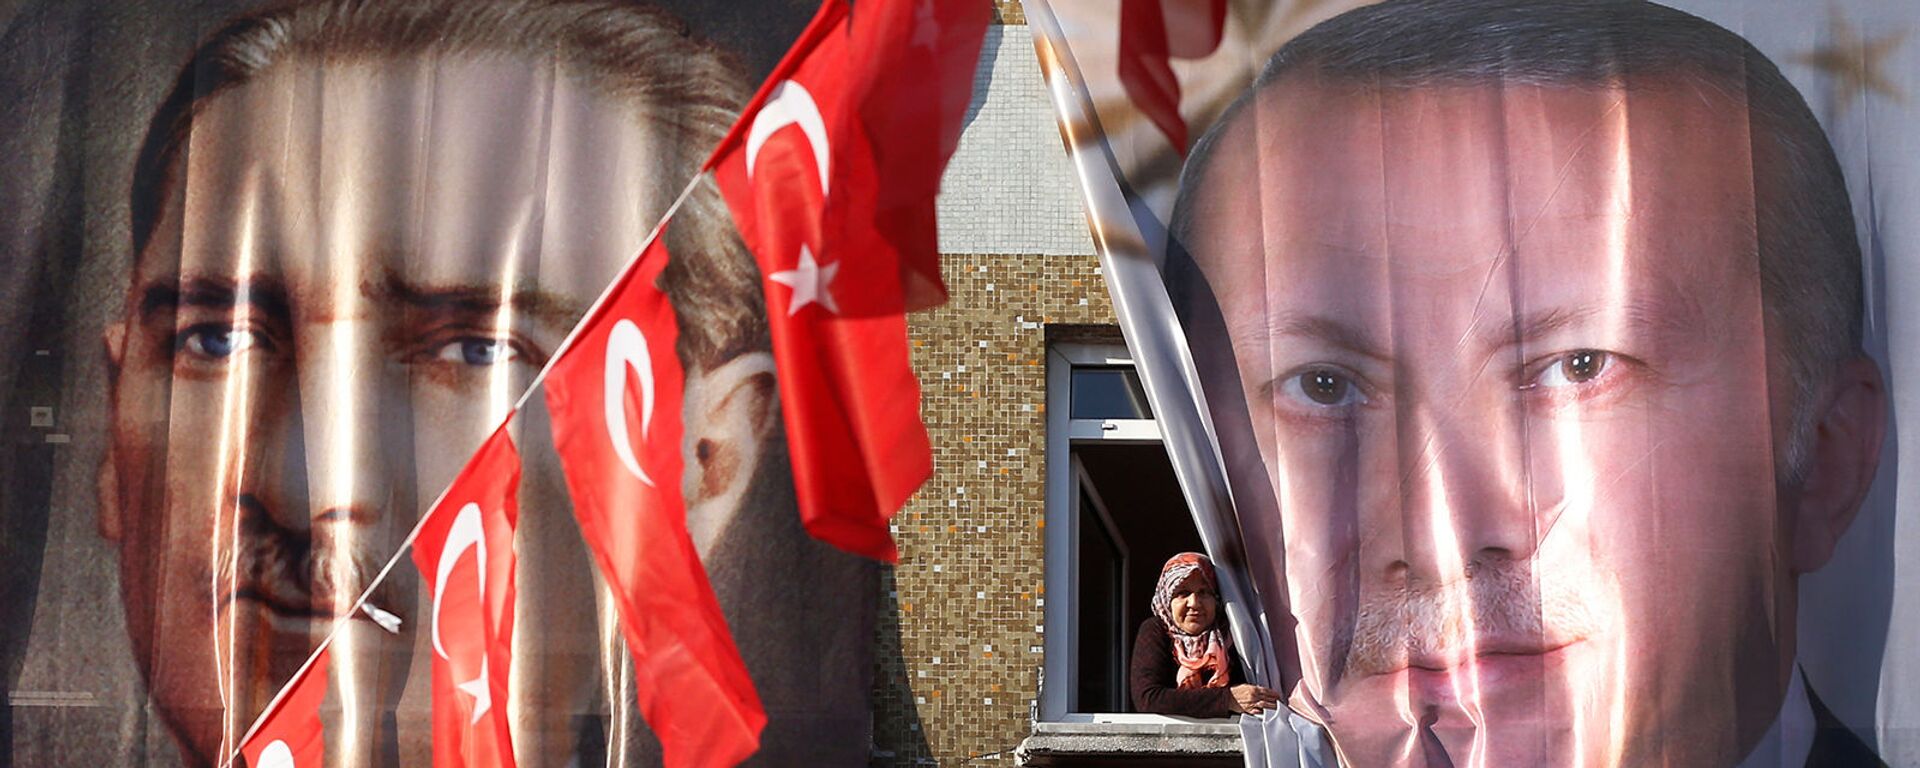 Баннеры с изображениями основателя Турецкой Республики Мустафы Кемаля Ататюрка и нынешнего президента Турции Реджепа Тайипа Эрдогана (5 марта 2019). Стамбул - Sputnik Արմենիա, 1920, 17.03.2021